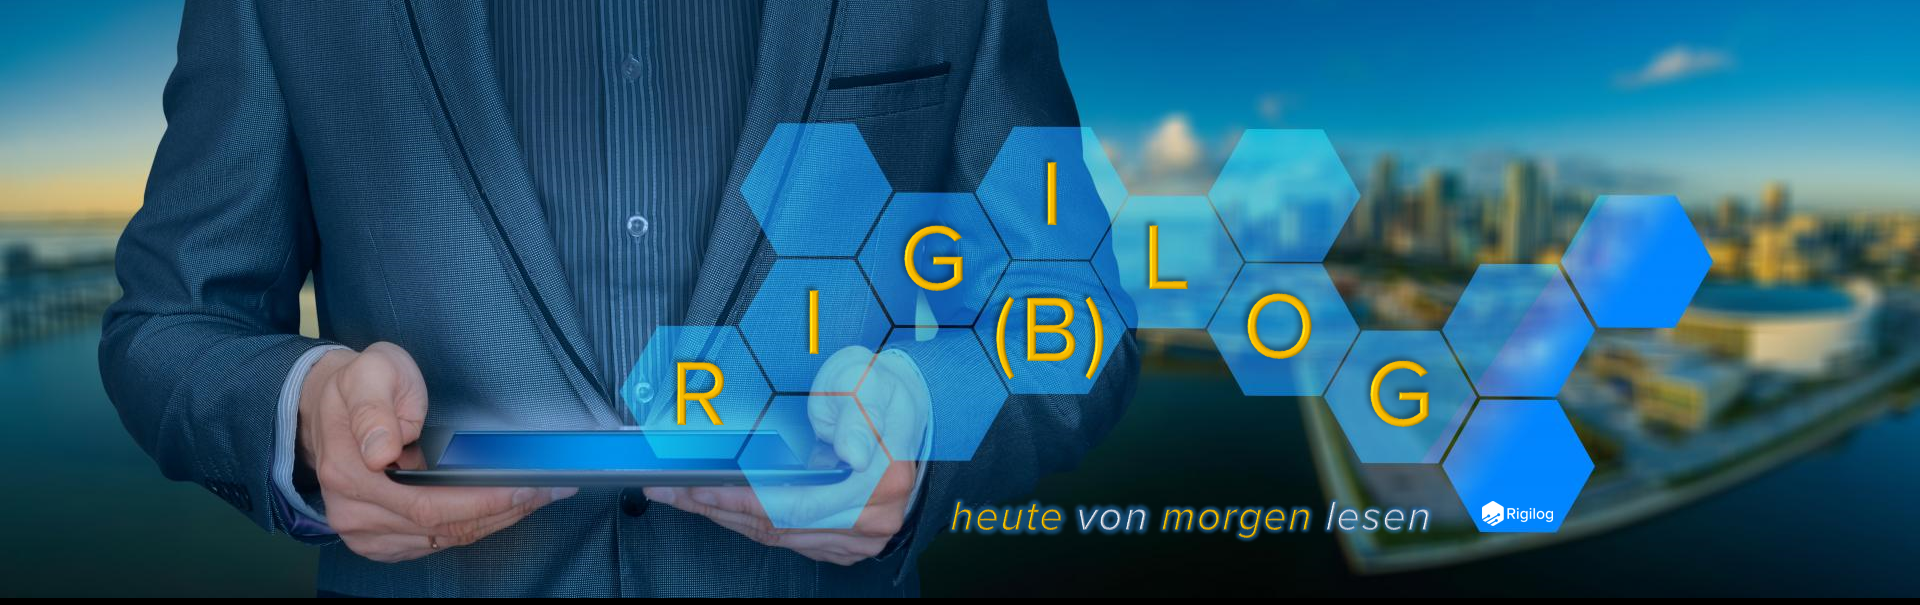 Rigi(B)log - heute von morgen lesen